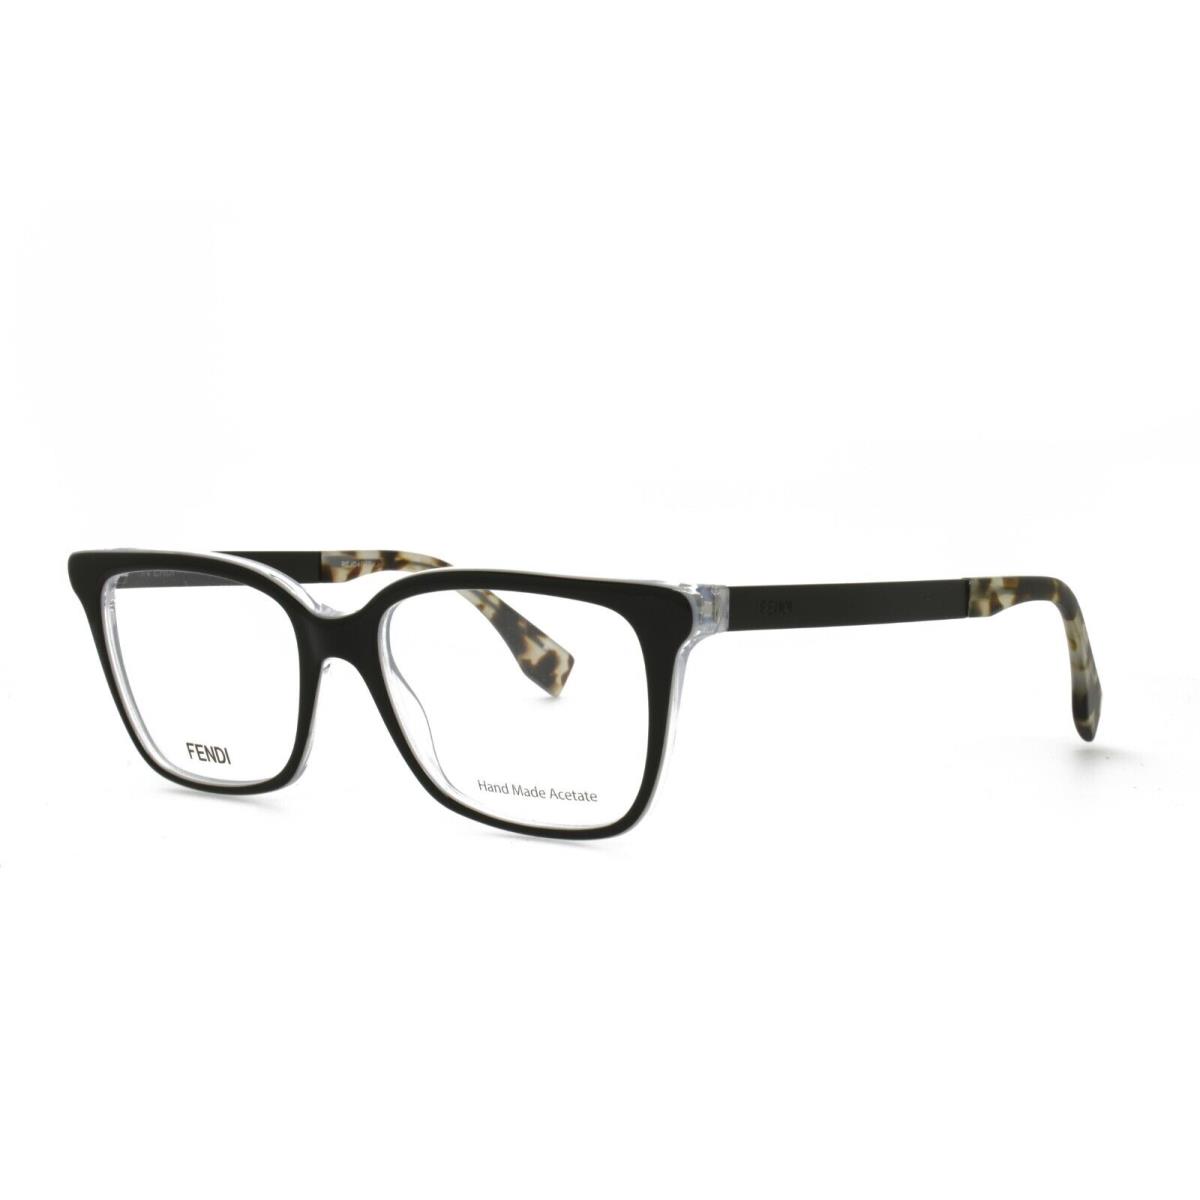 Fendi 0077 DU0 50-17-140 Black Eyeglasses Frames